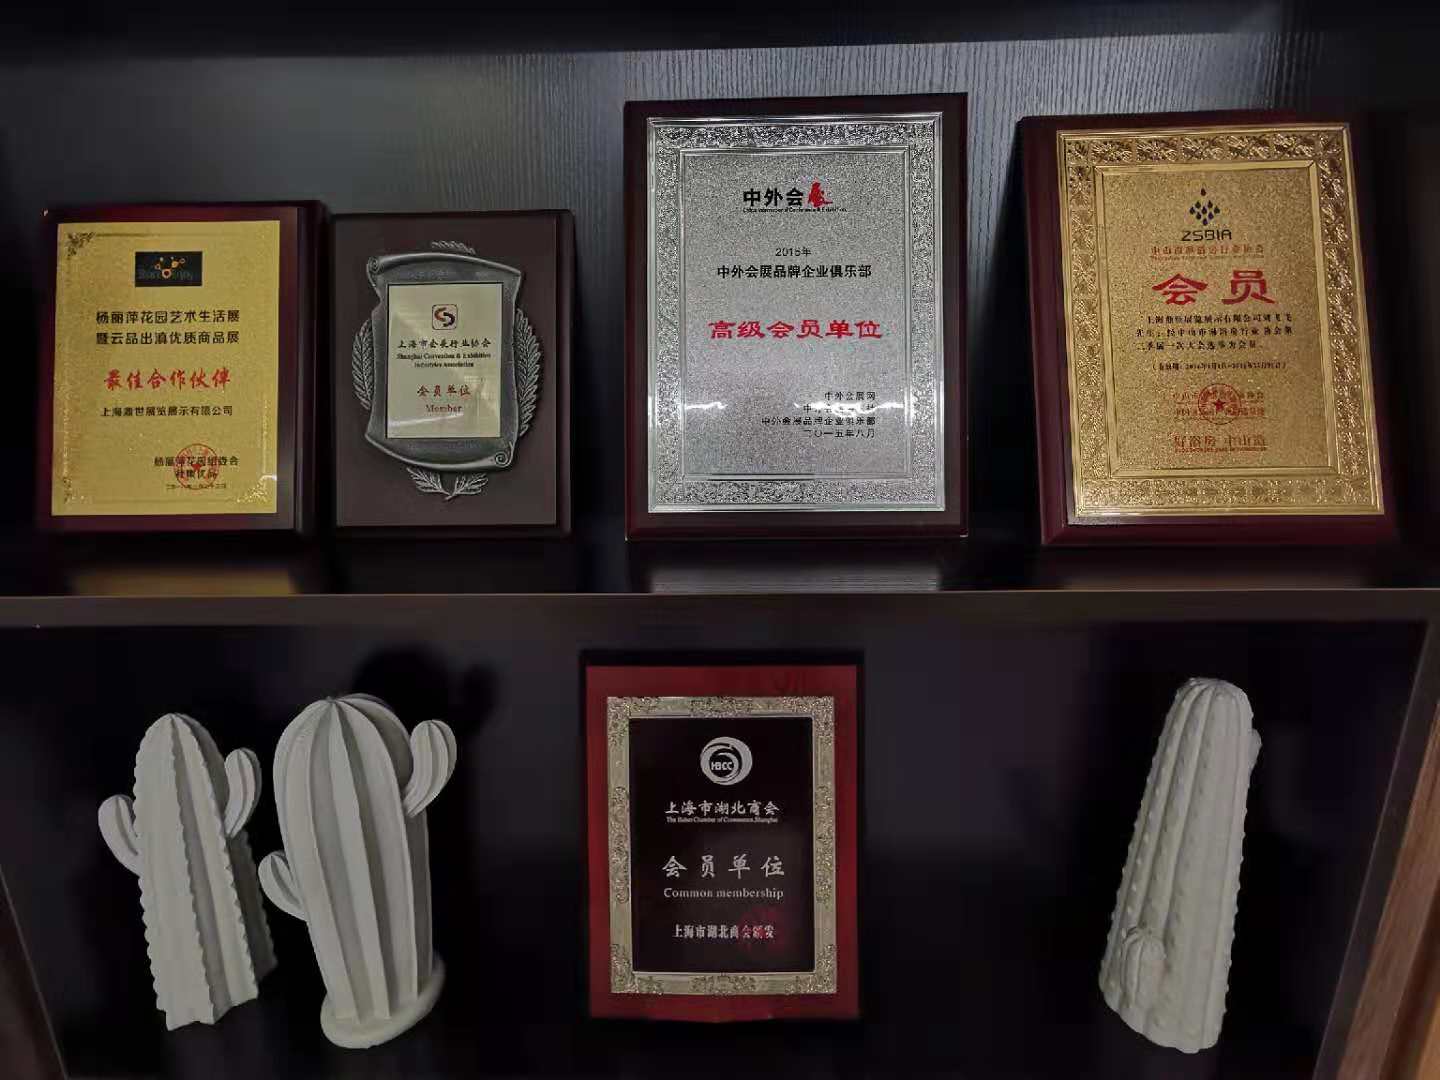 上海灵闪展柜厂获得奖项证书